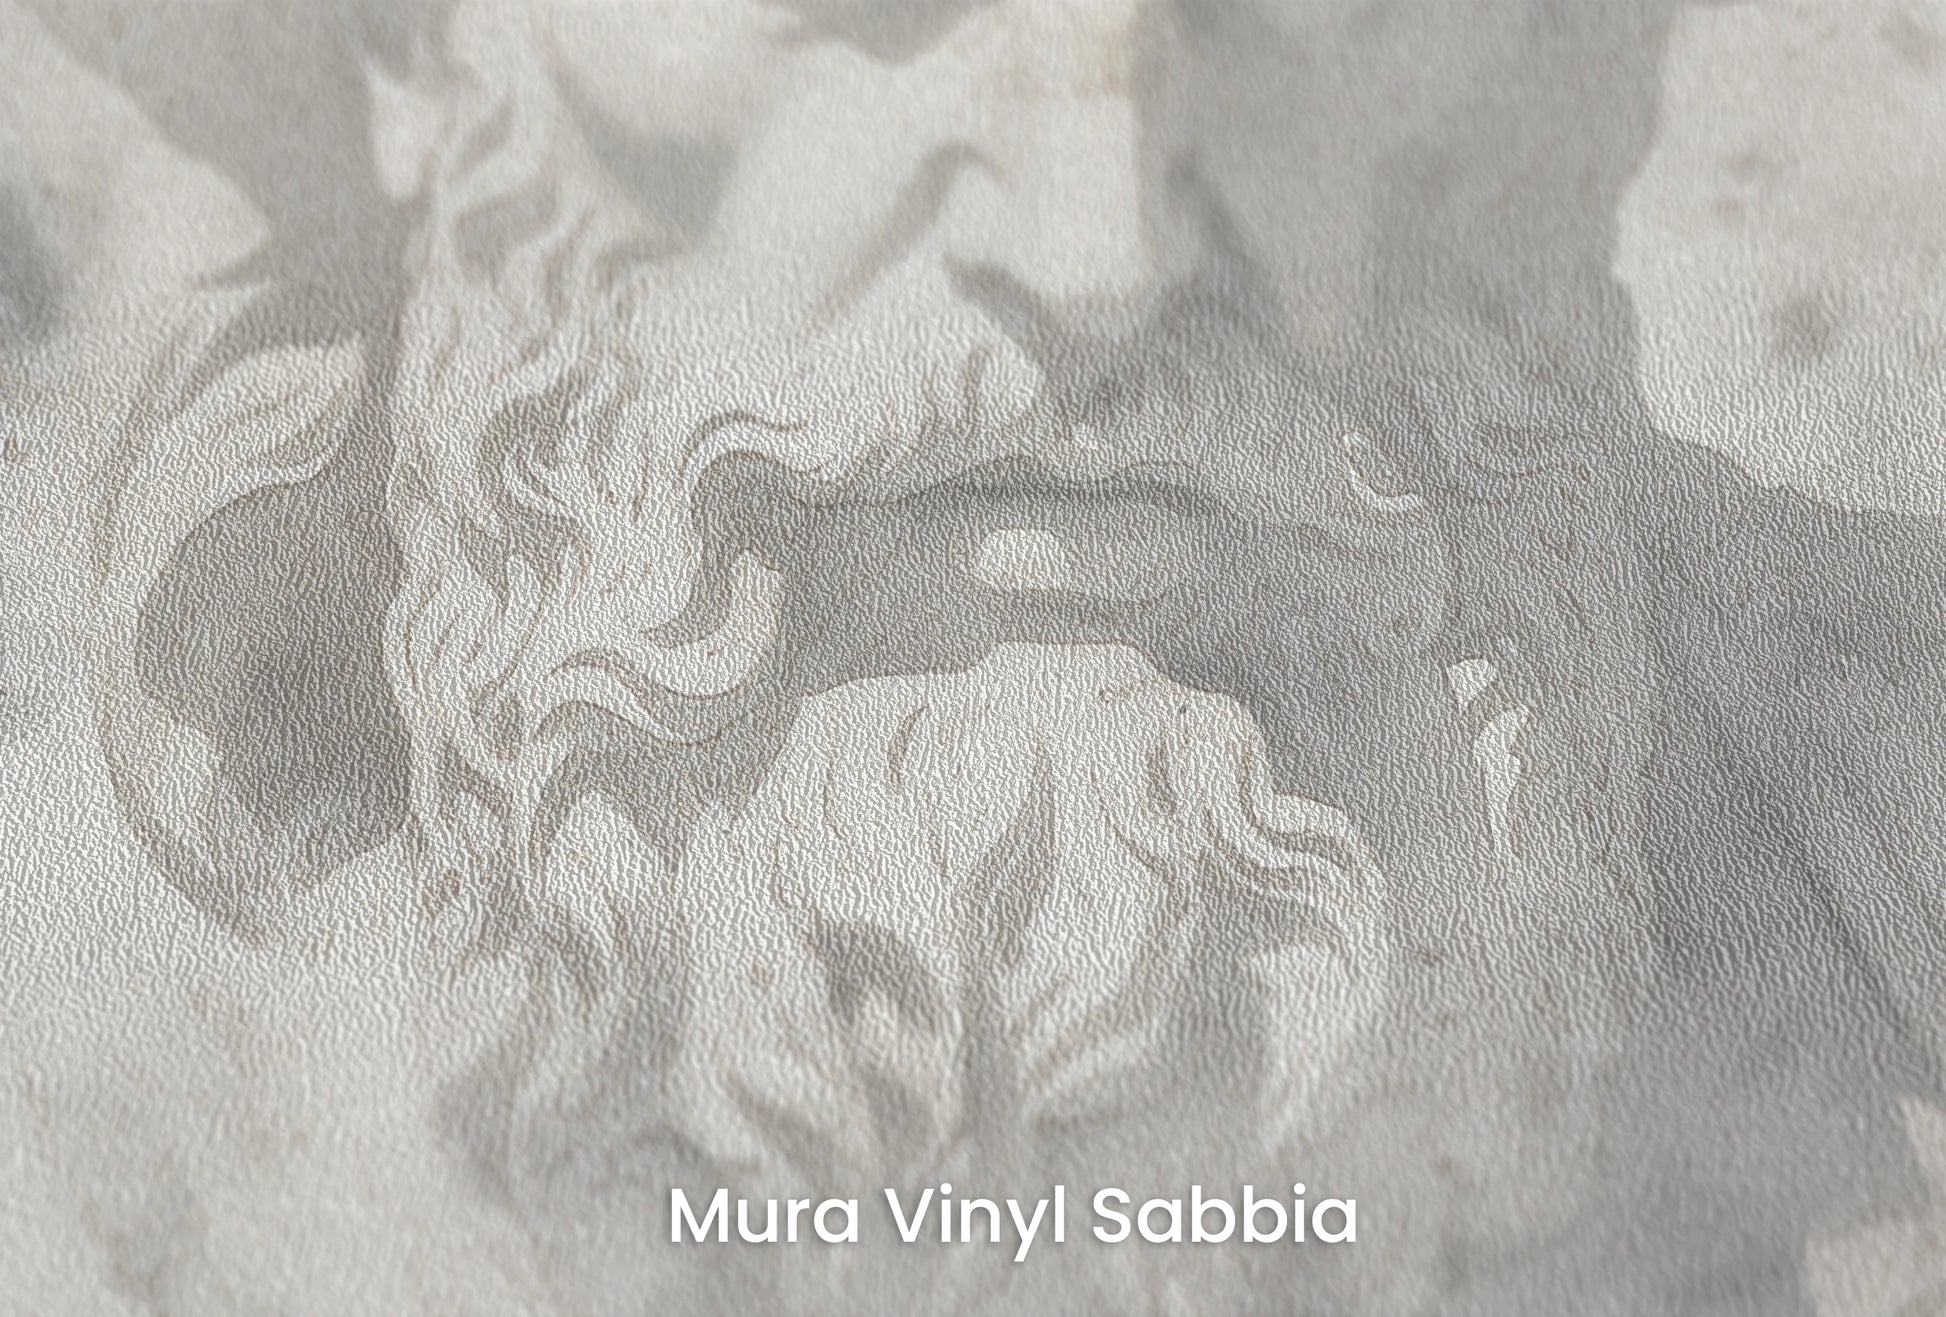 Zbliżenie na artystyczną fototapetę o nazwie Mythical Echoes na podłożu Mura Vinyl Sabbia struktura grubego ziarna piasku.